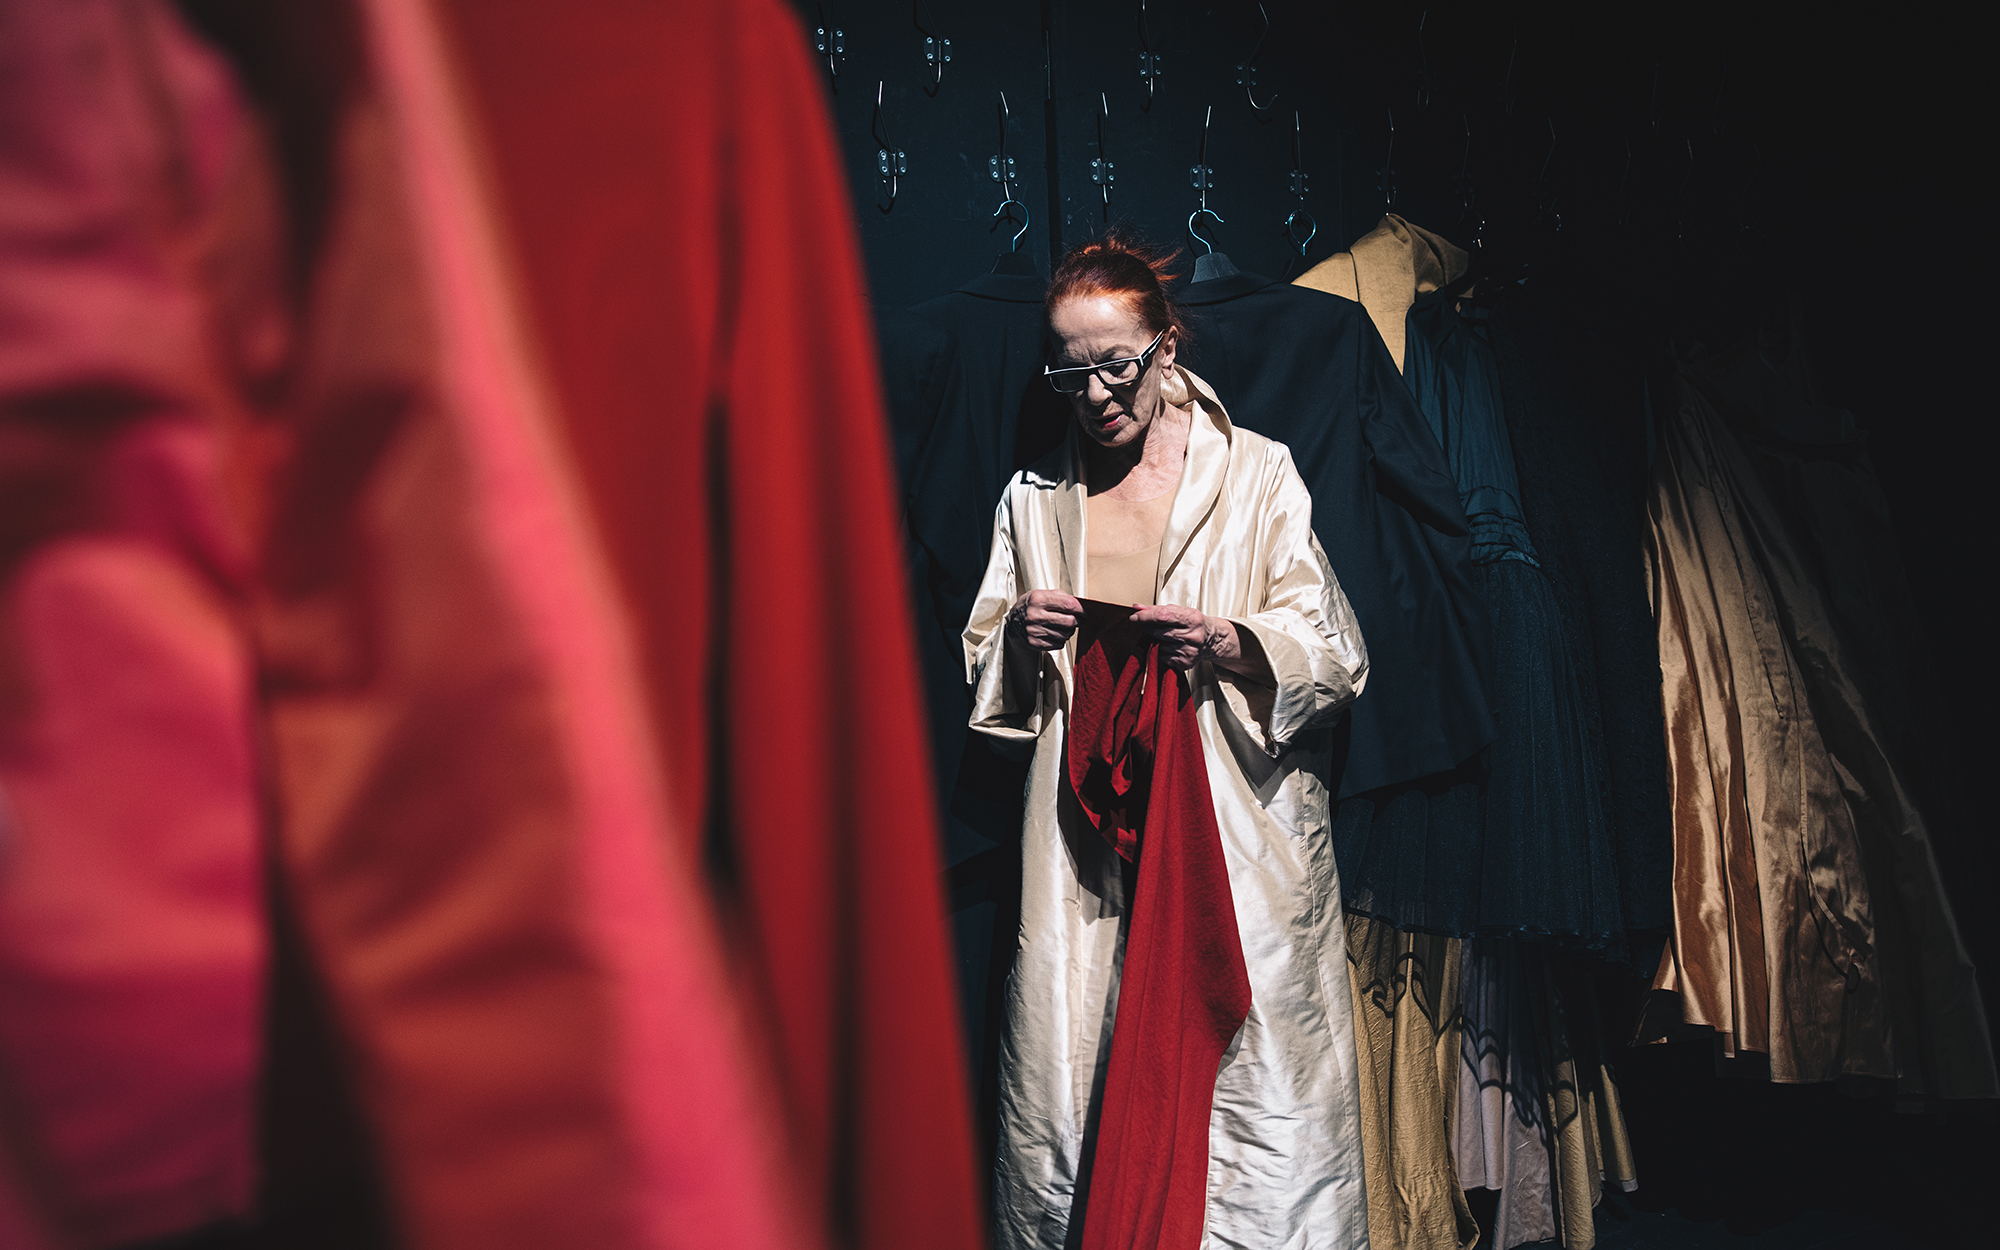 Jožica Avbelj stoji pred steno, na kateri je obešenih veliko najrazličnejših oblačil. Oblečena je v zlat plašč, v rokah zamišljeno drži dolgo rdečo tkanino.